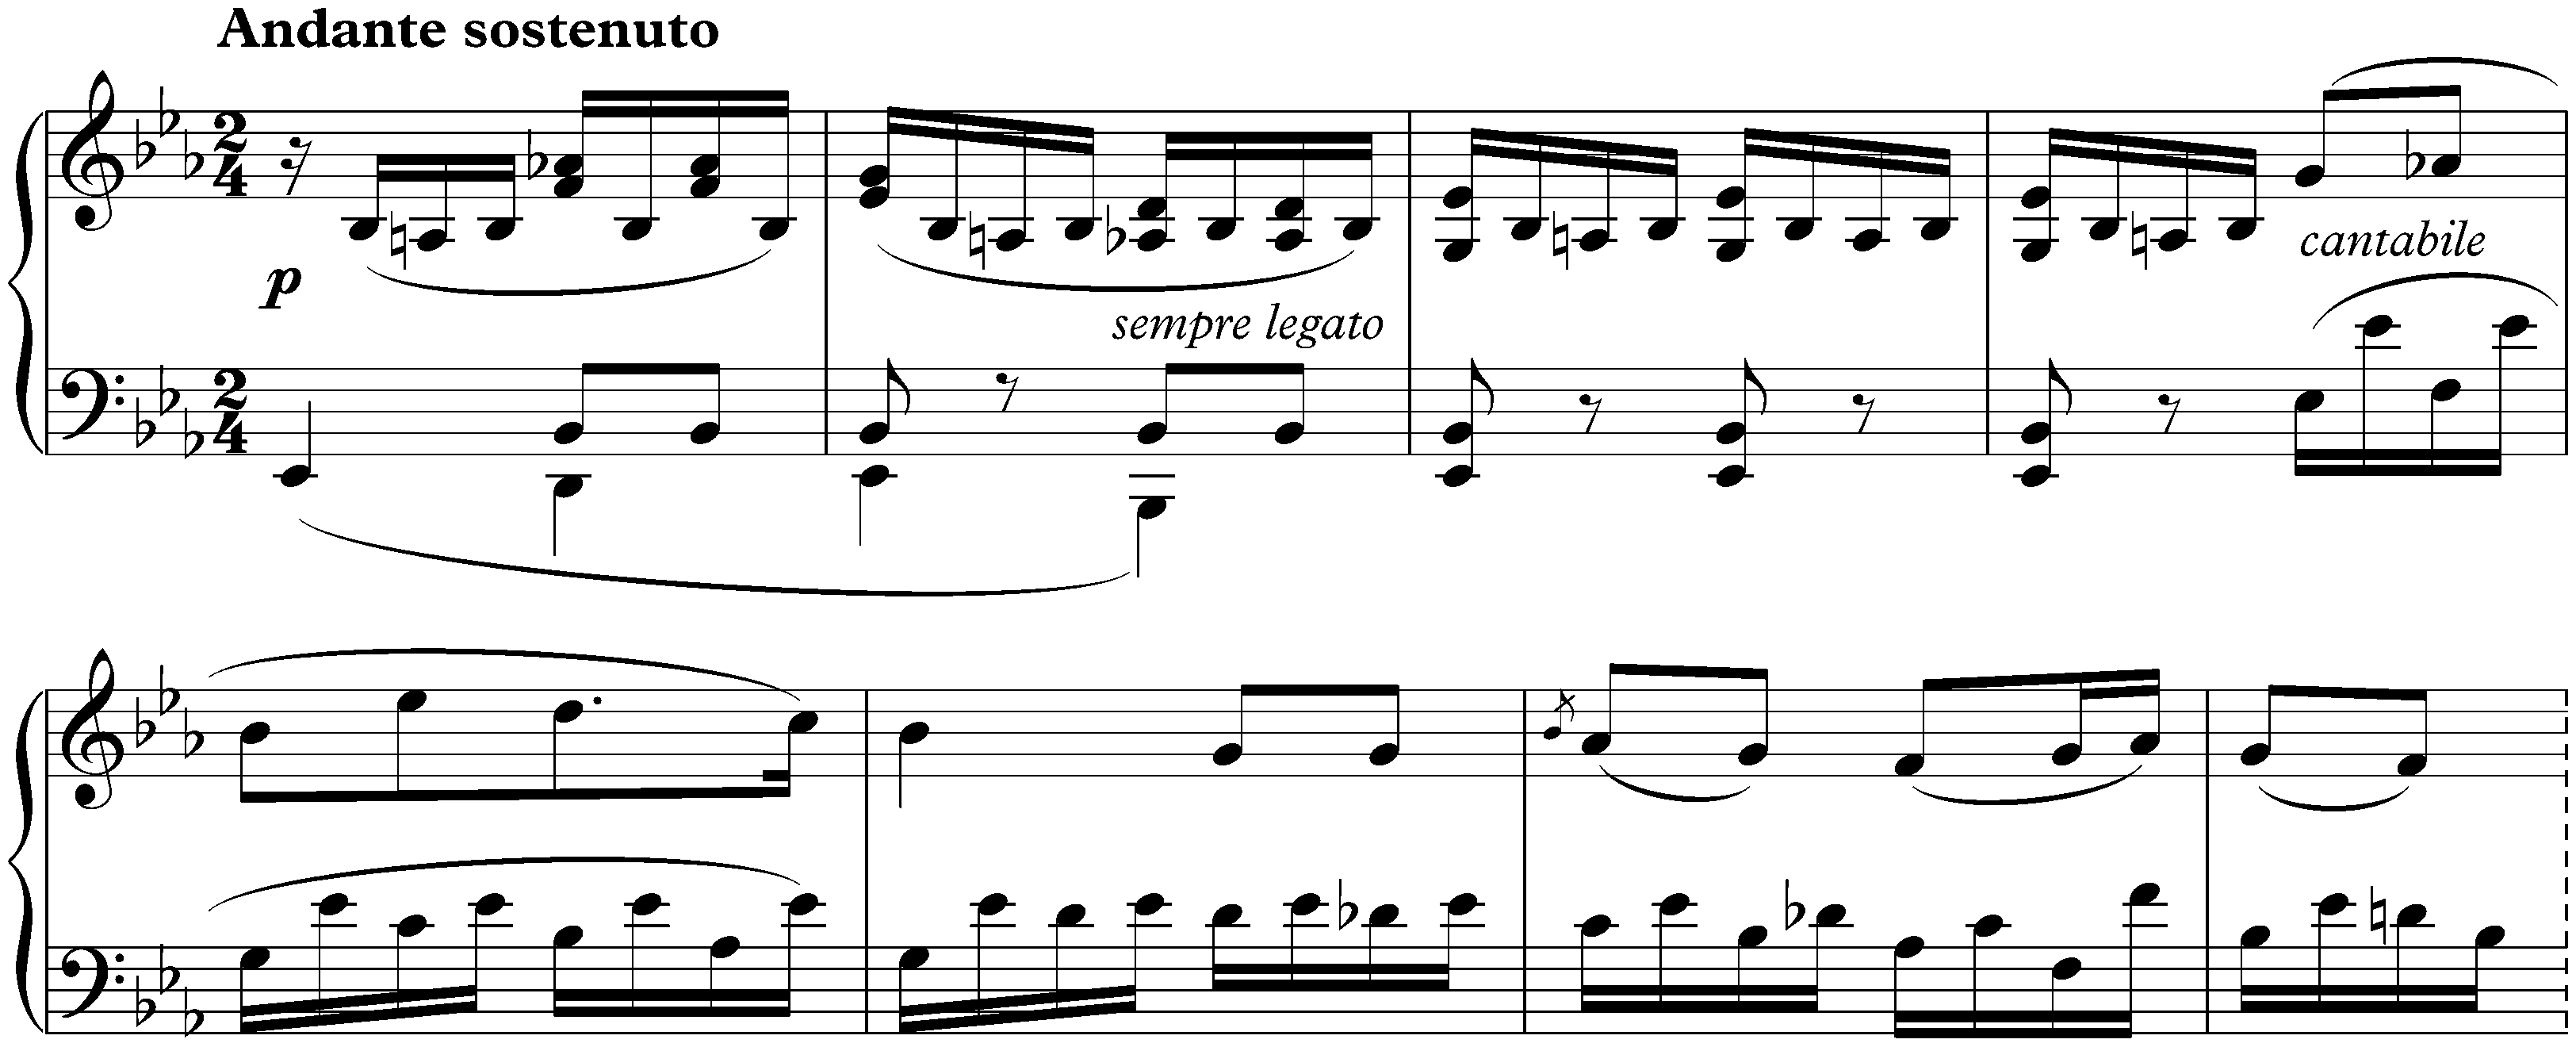 Kinderstücke, op. 72; 2. E-flat major